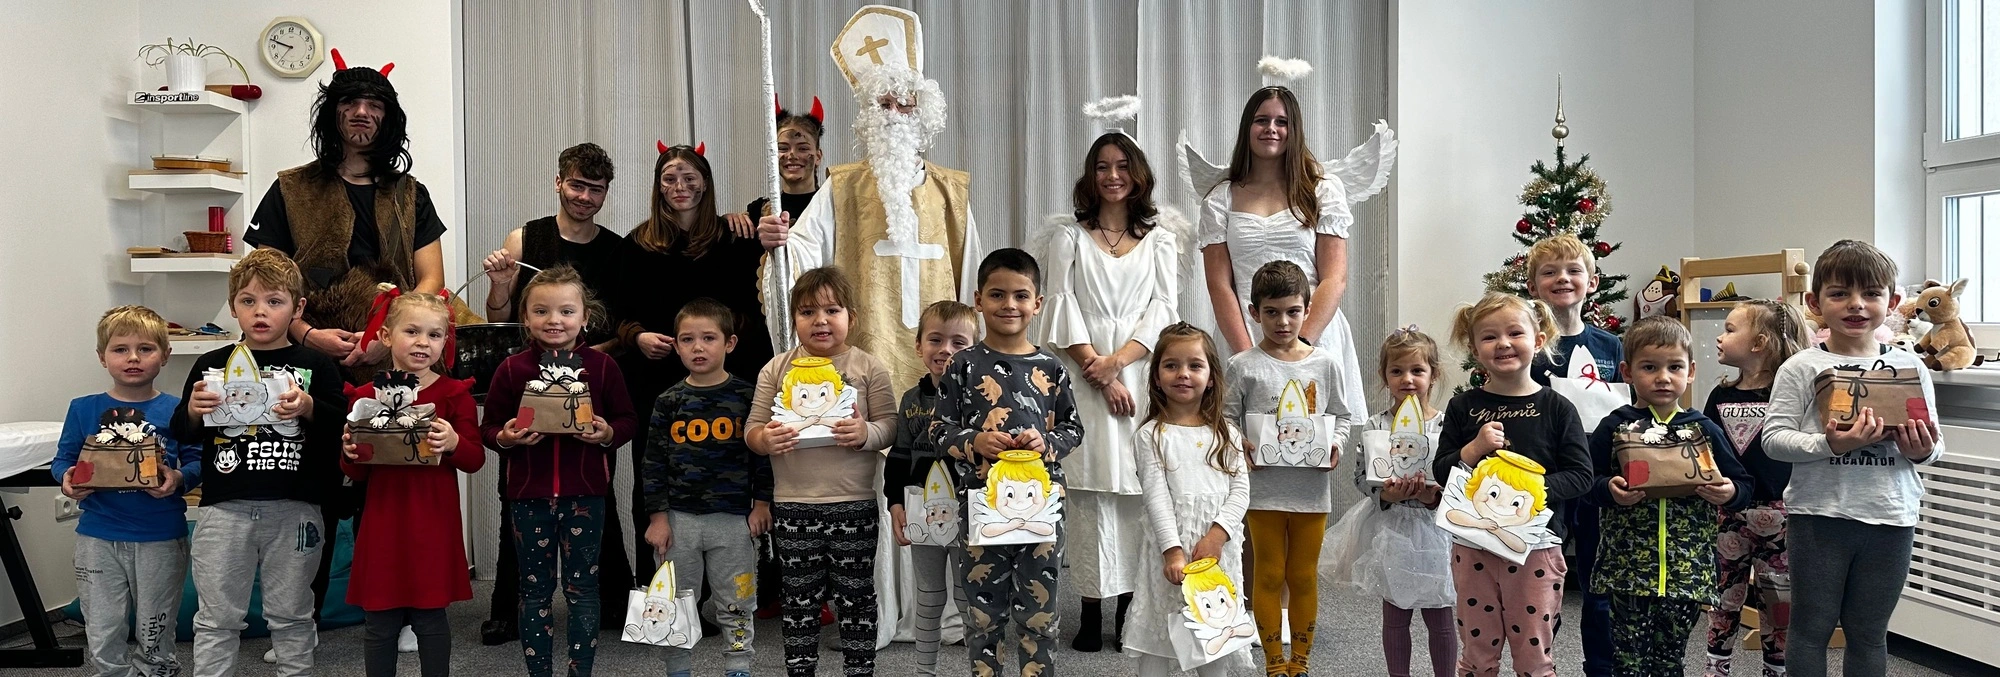 Děti ve školce s Mikulášem, anděli a čerty